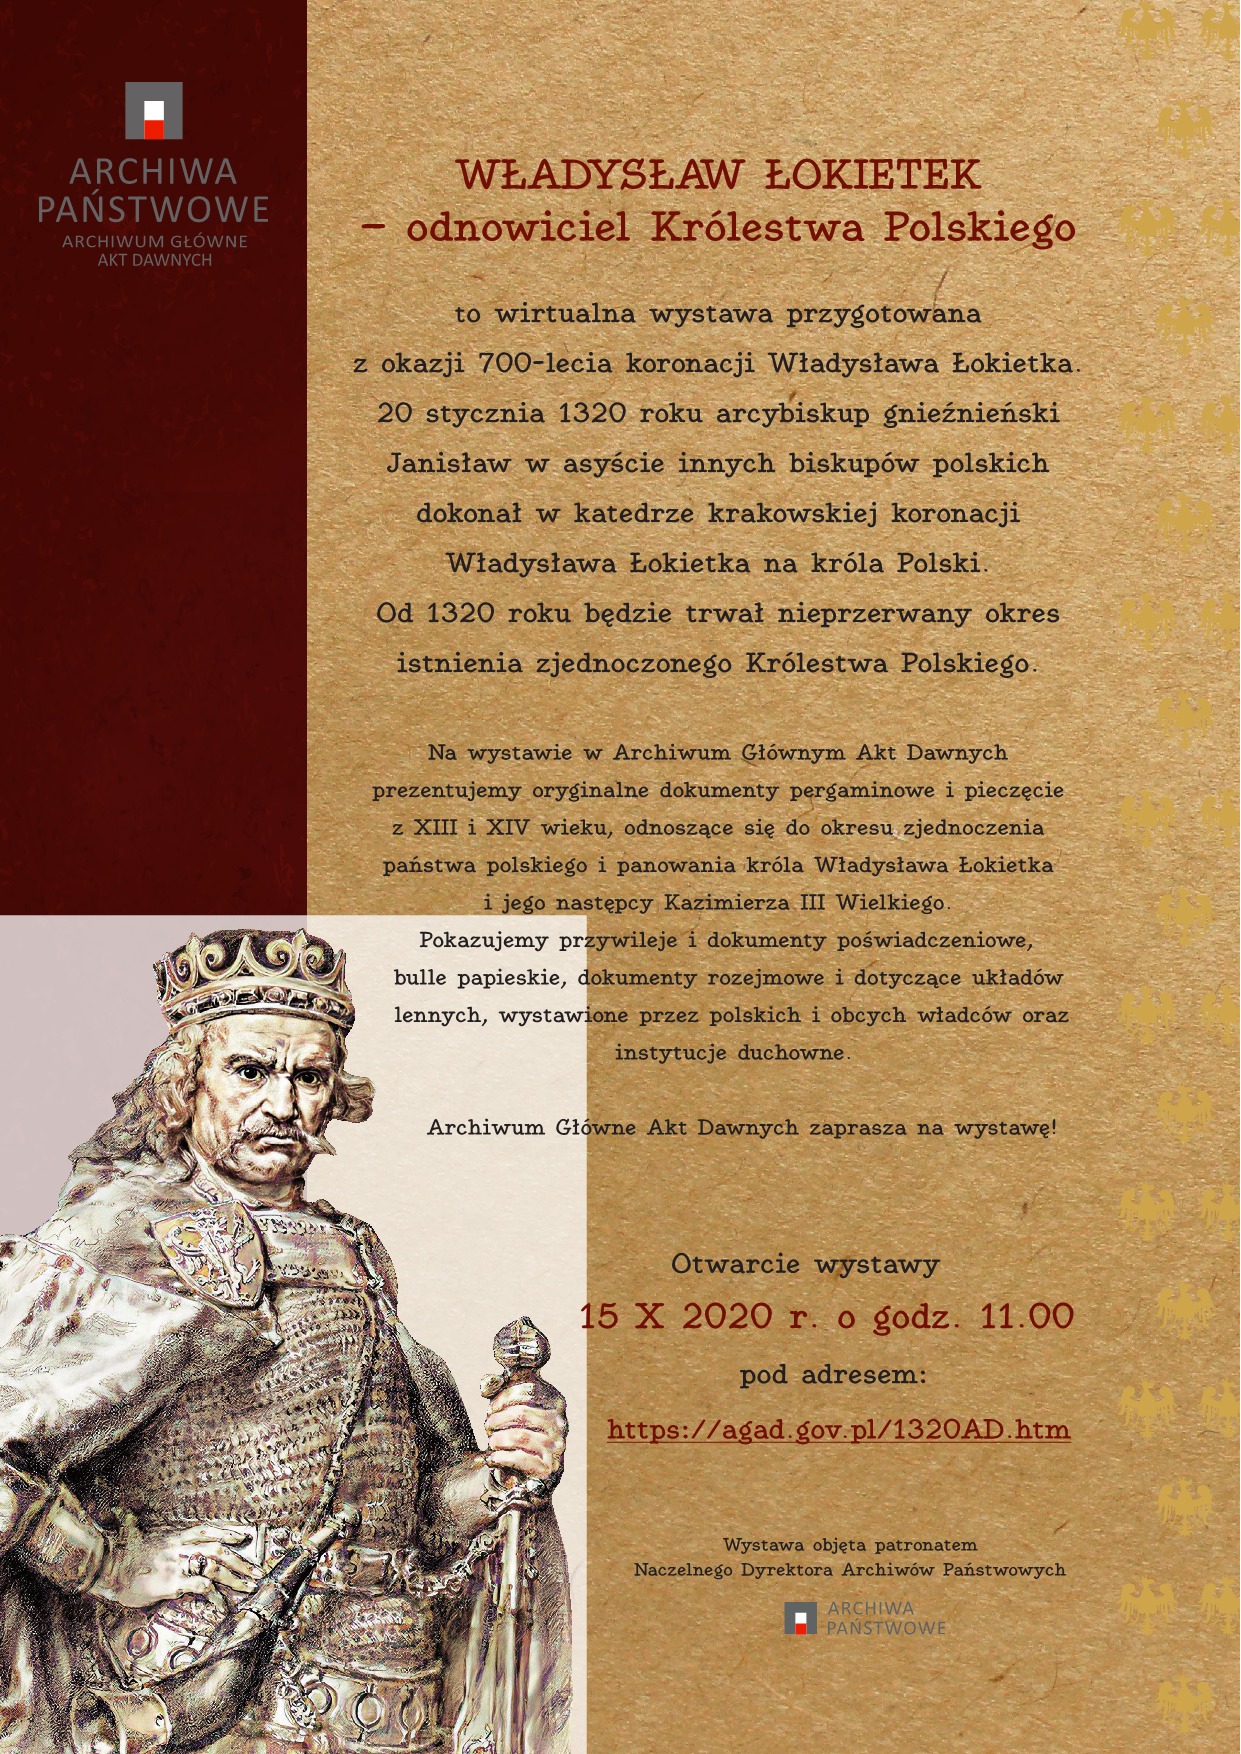 Zaproszenie na wystawę "Władysław Łokietek - odnowiciel Królestwa Polskiego"